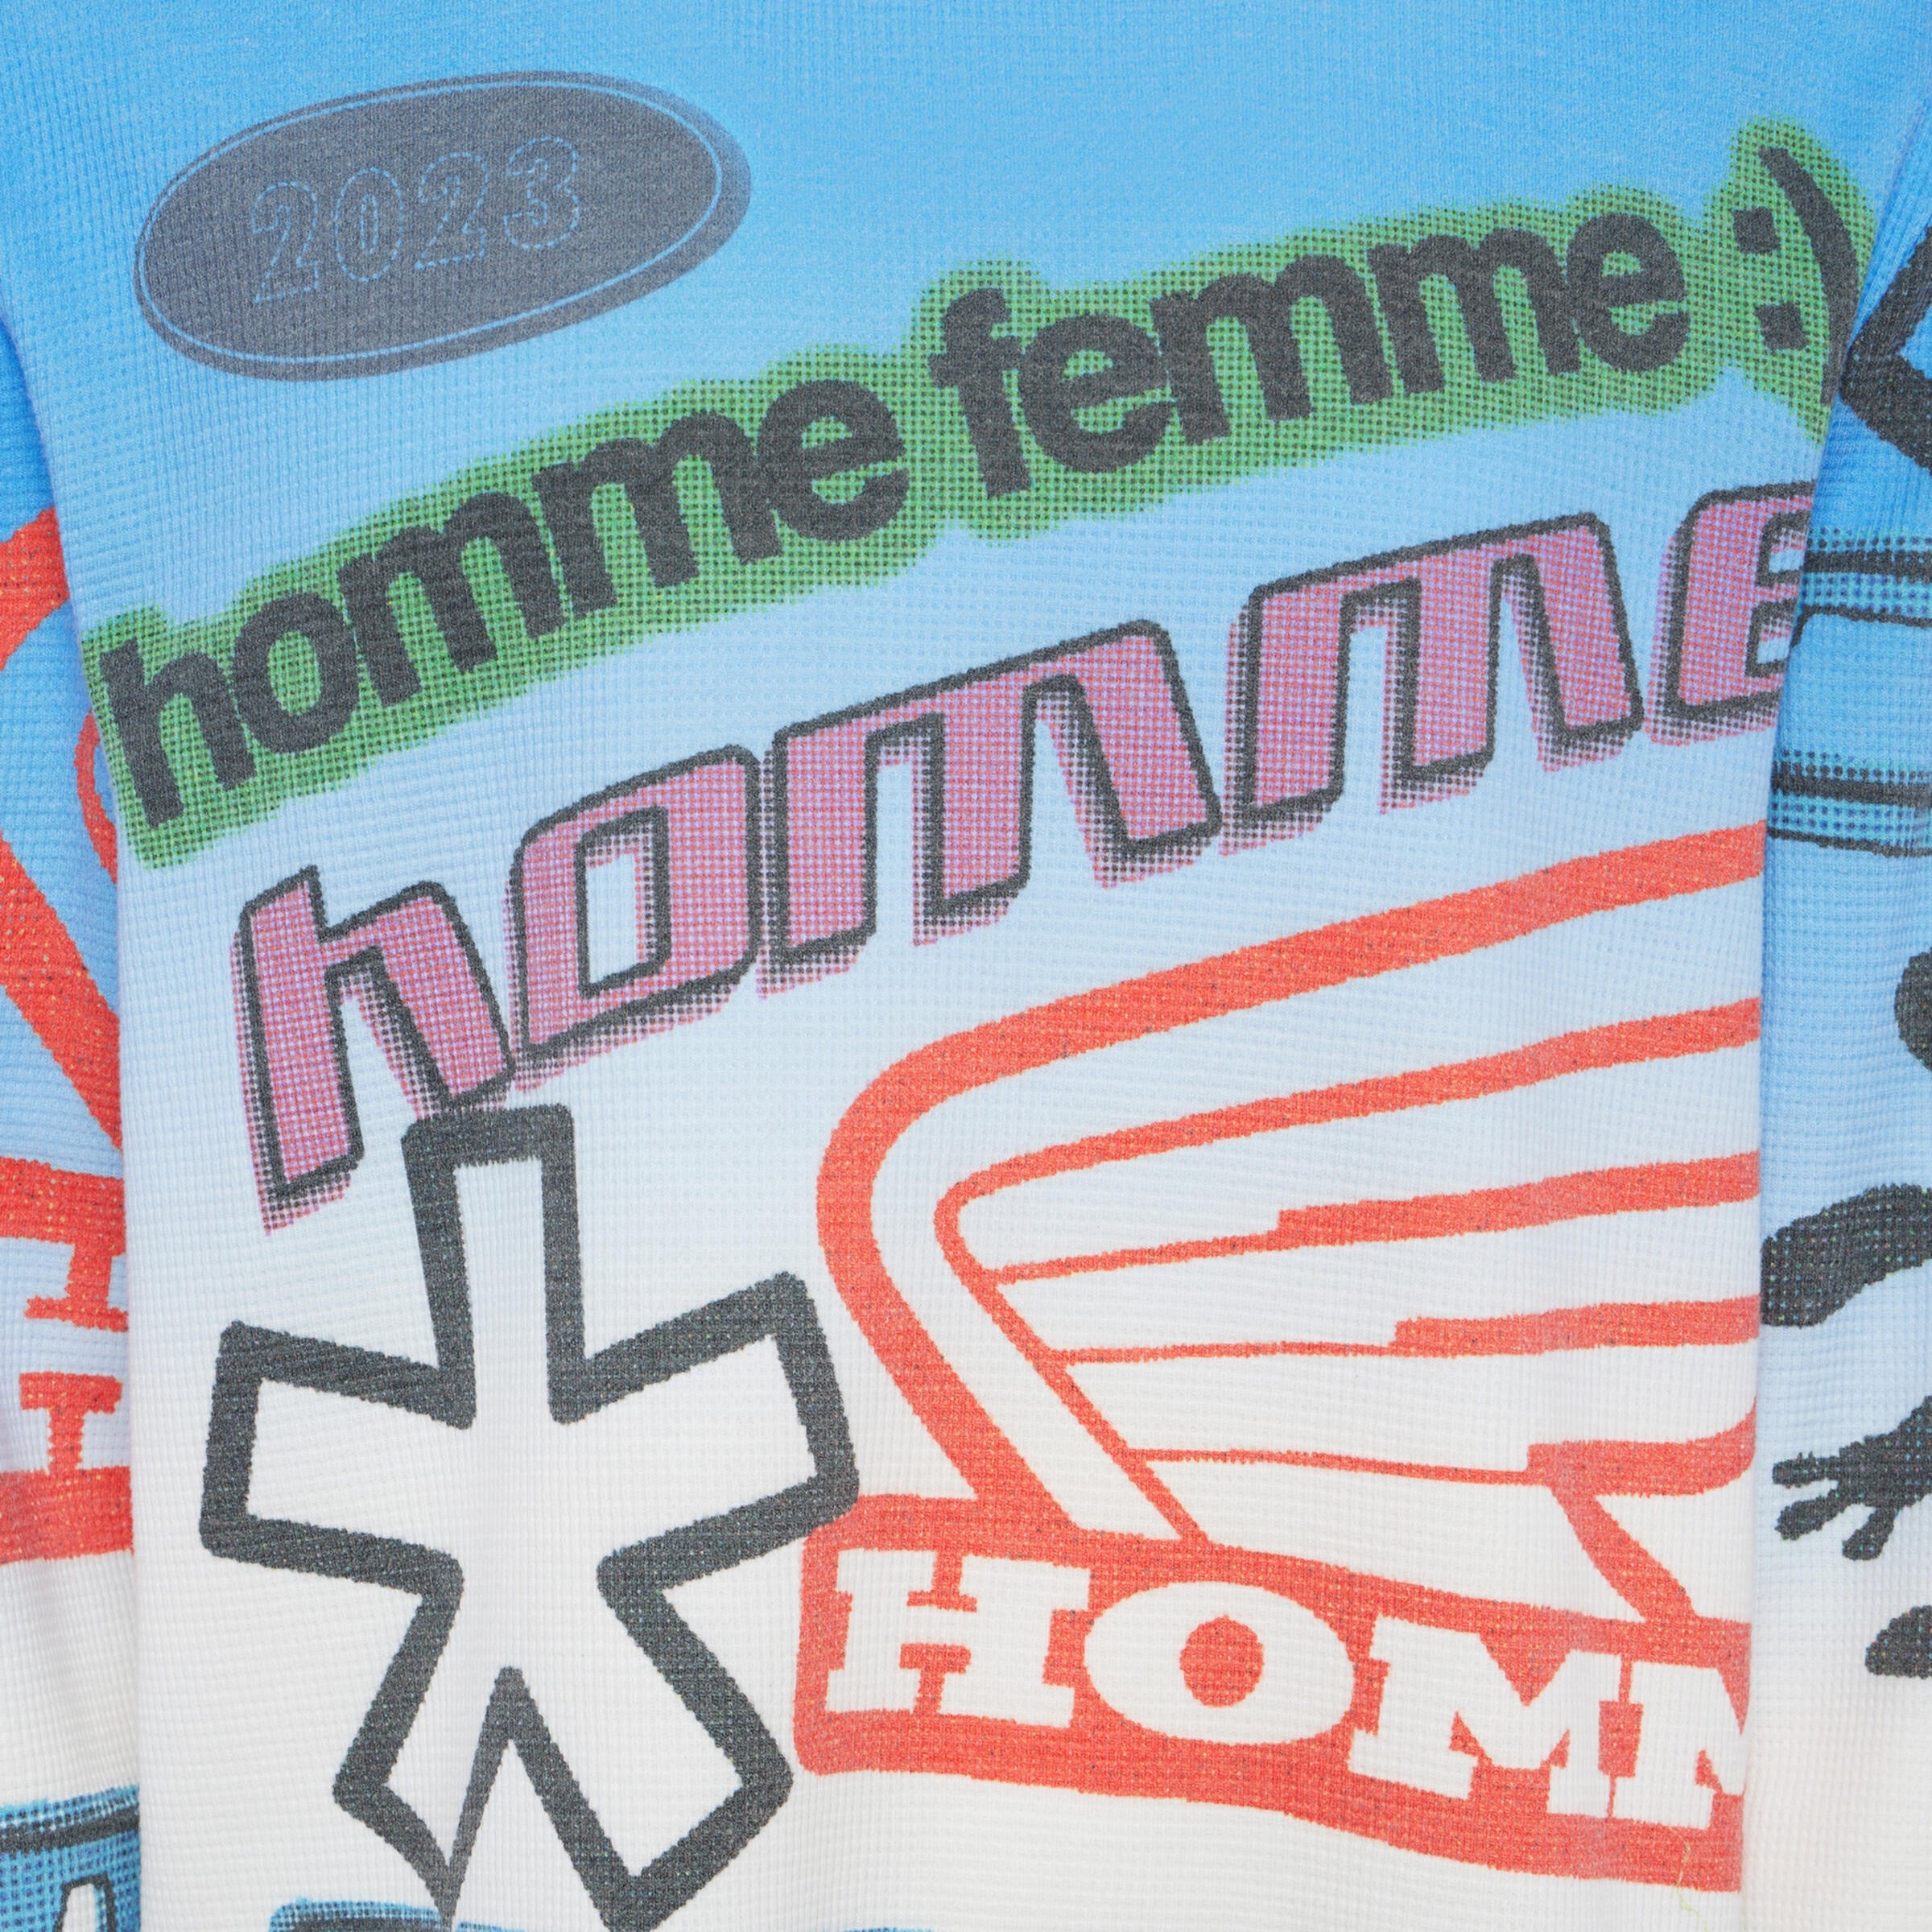 Maillot thermique femme Solstice 2.0 Klim moto : , t-shirt  technique de moto